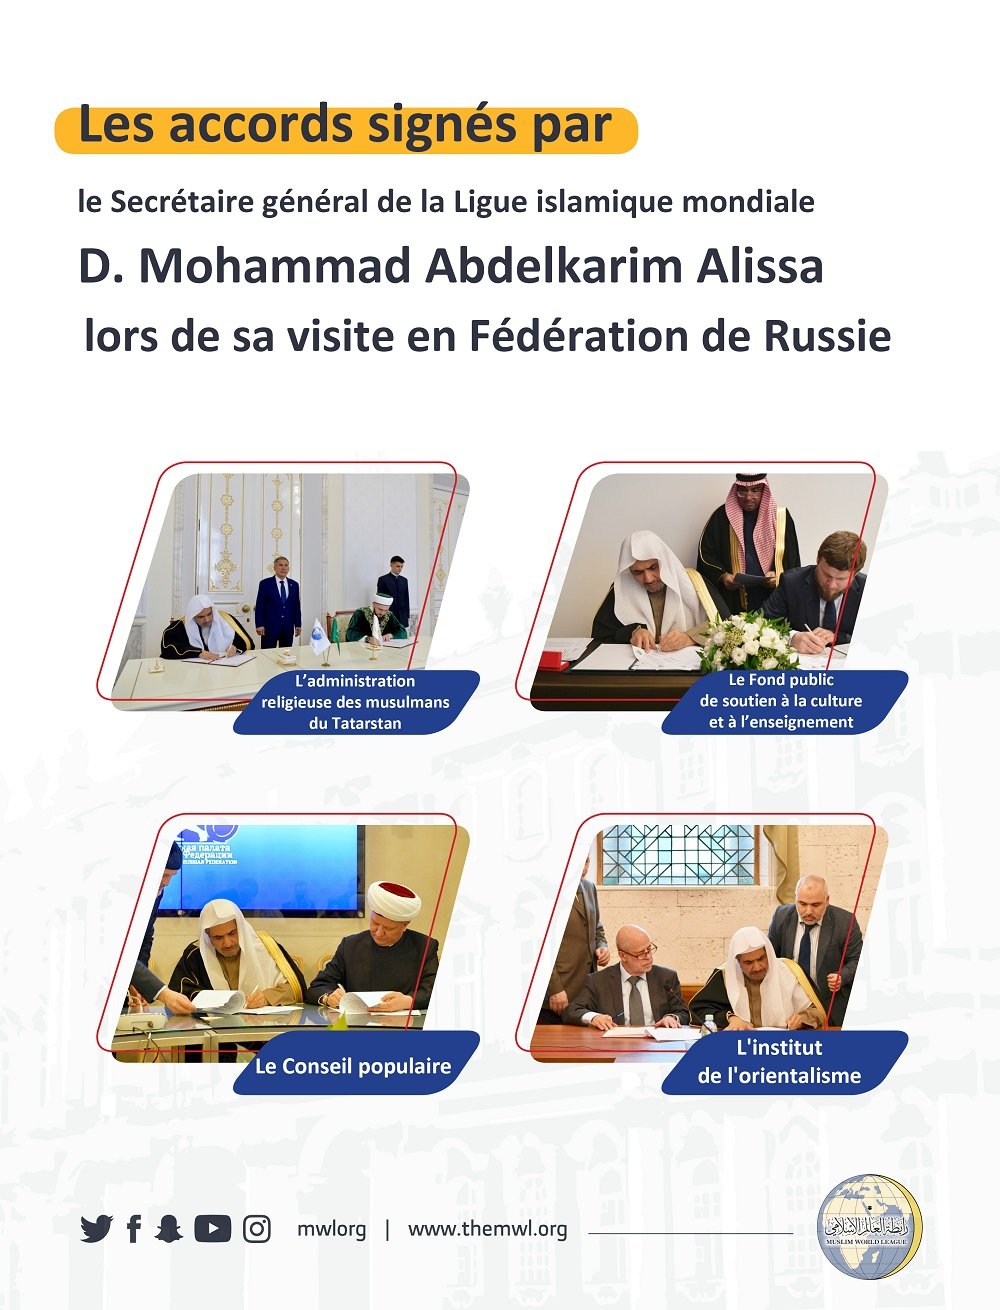 Les accords signés par le D. Mohammad Alissa lors de sa visite en Fédération de Russie